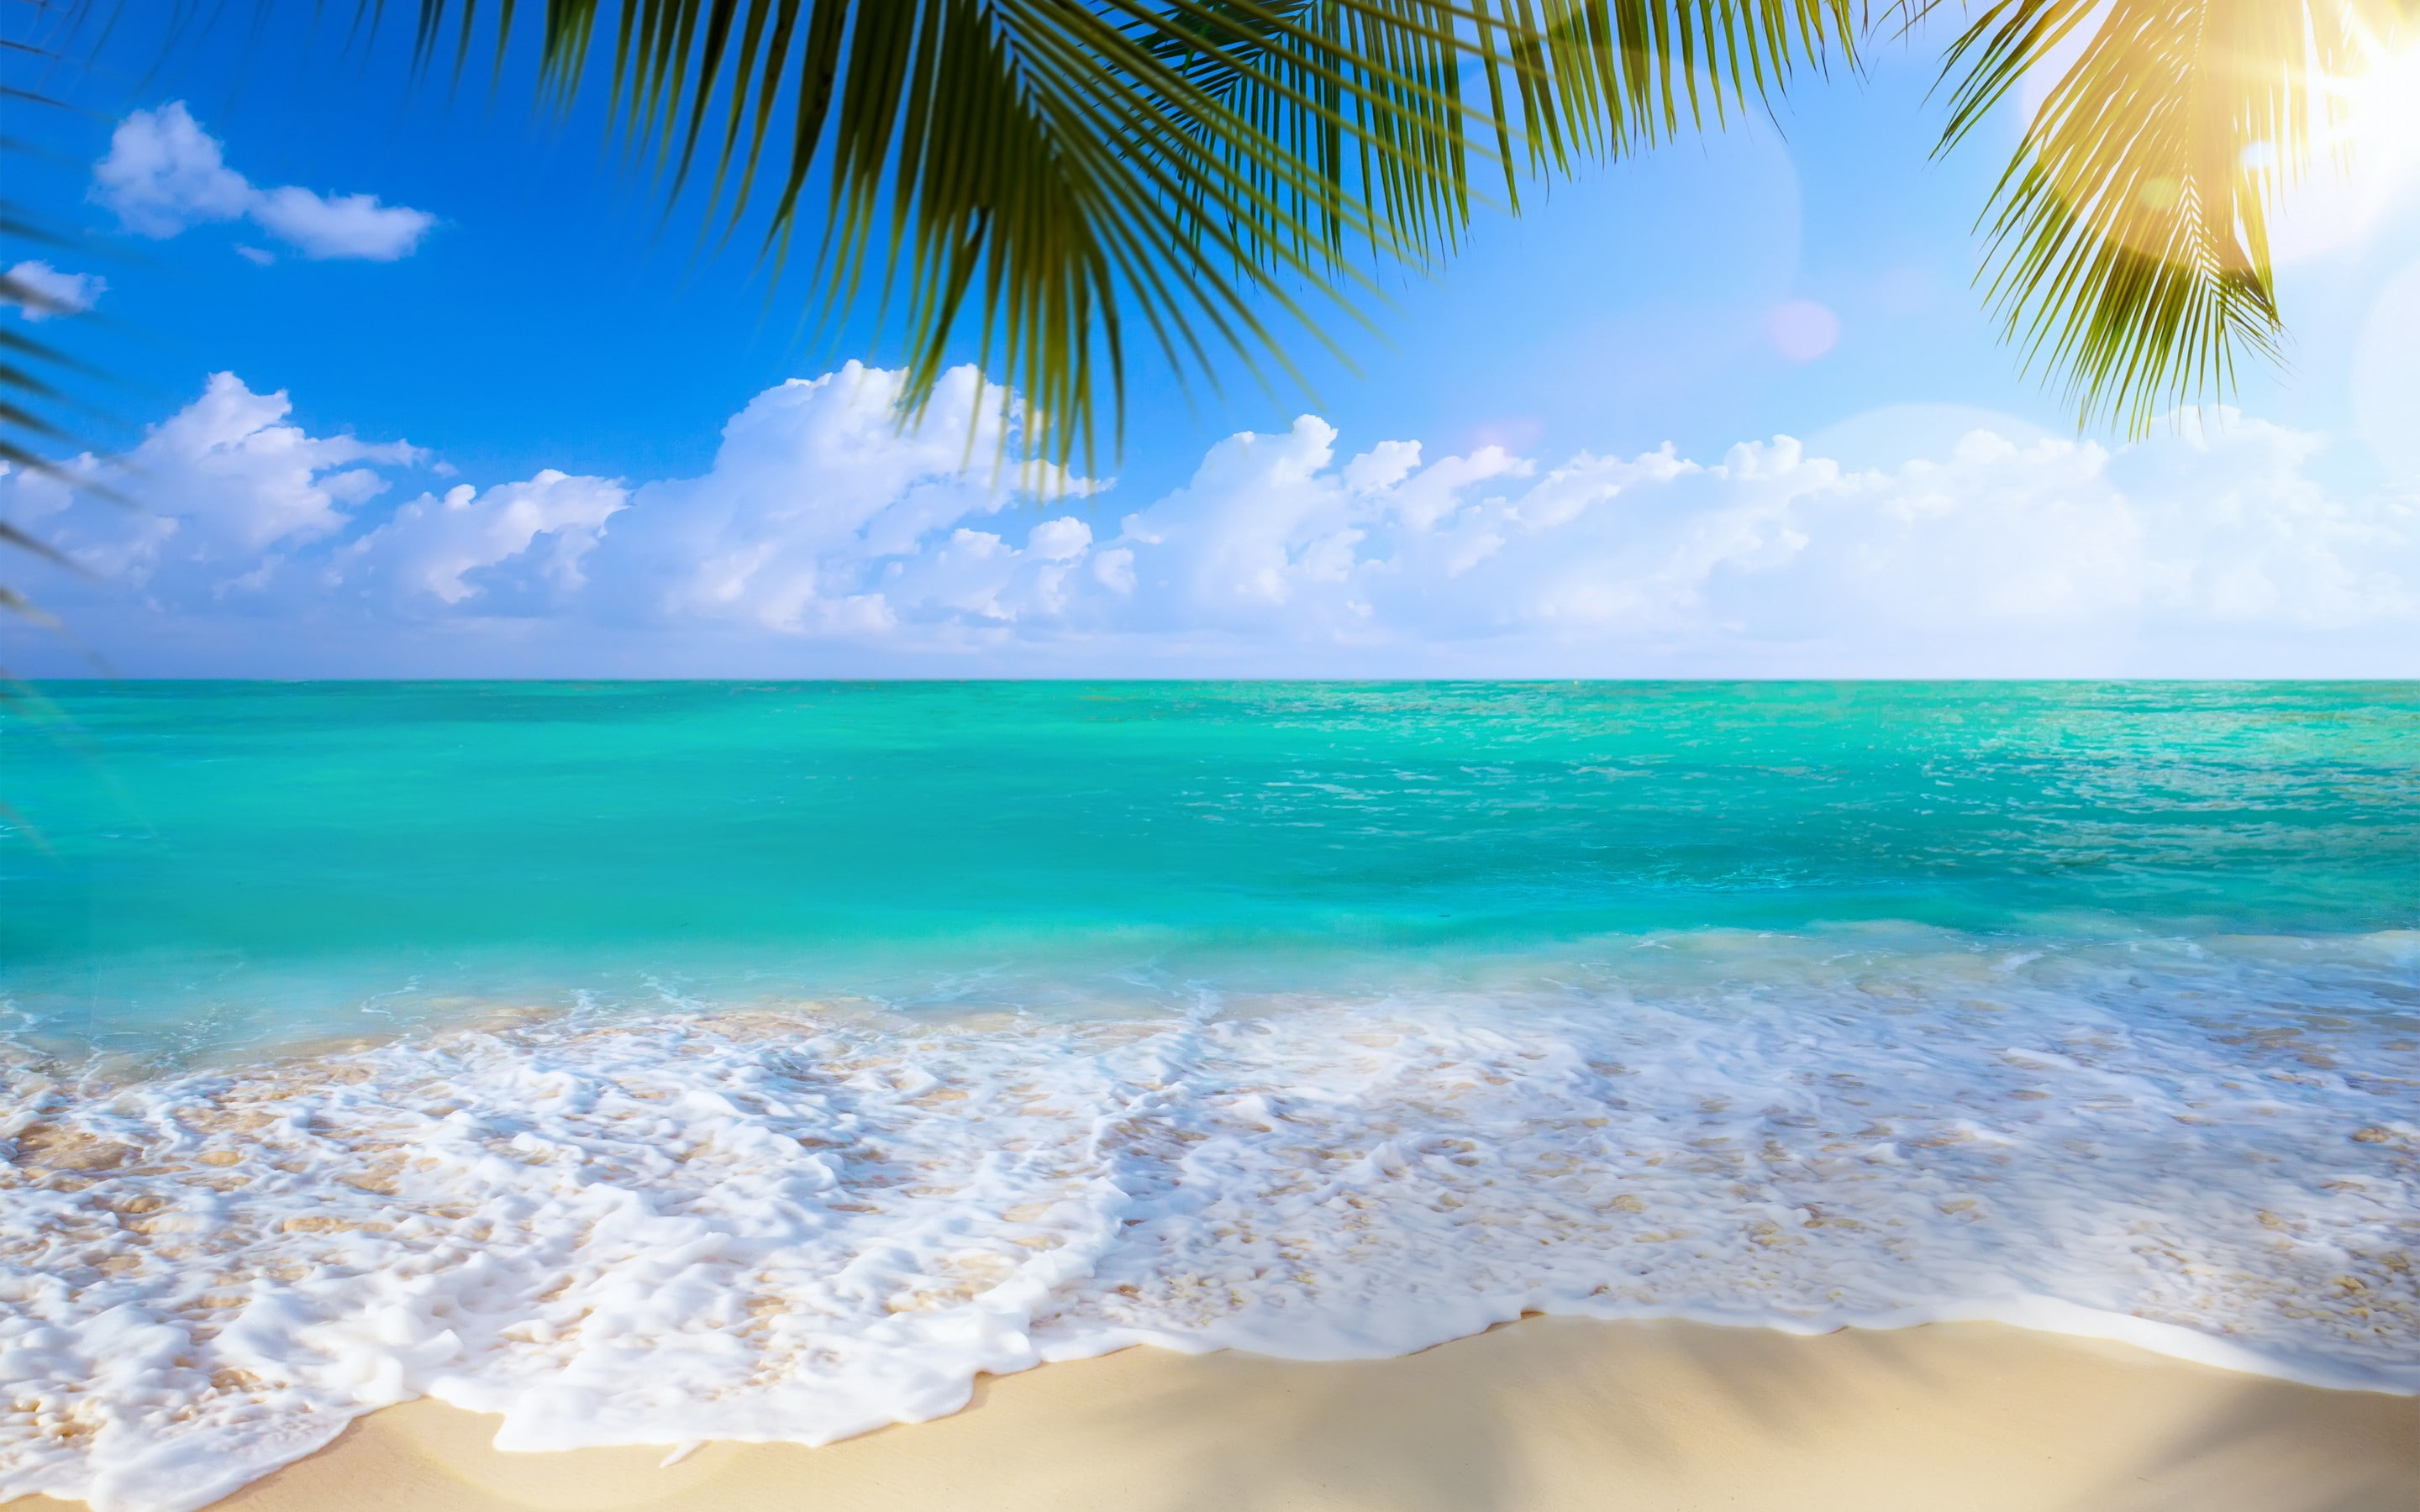 Beach, sea, shore, white salts, summer, paradise, tropical, sand